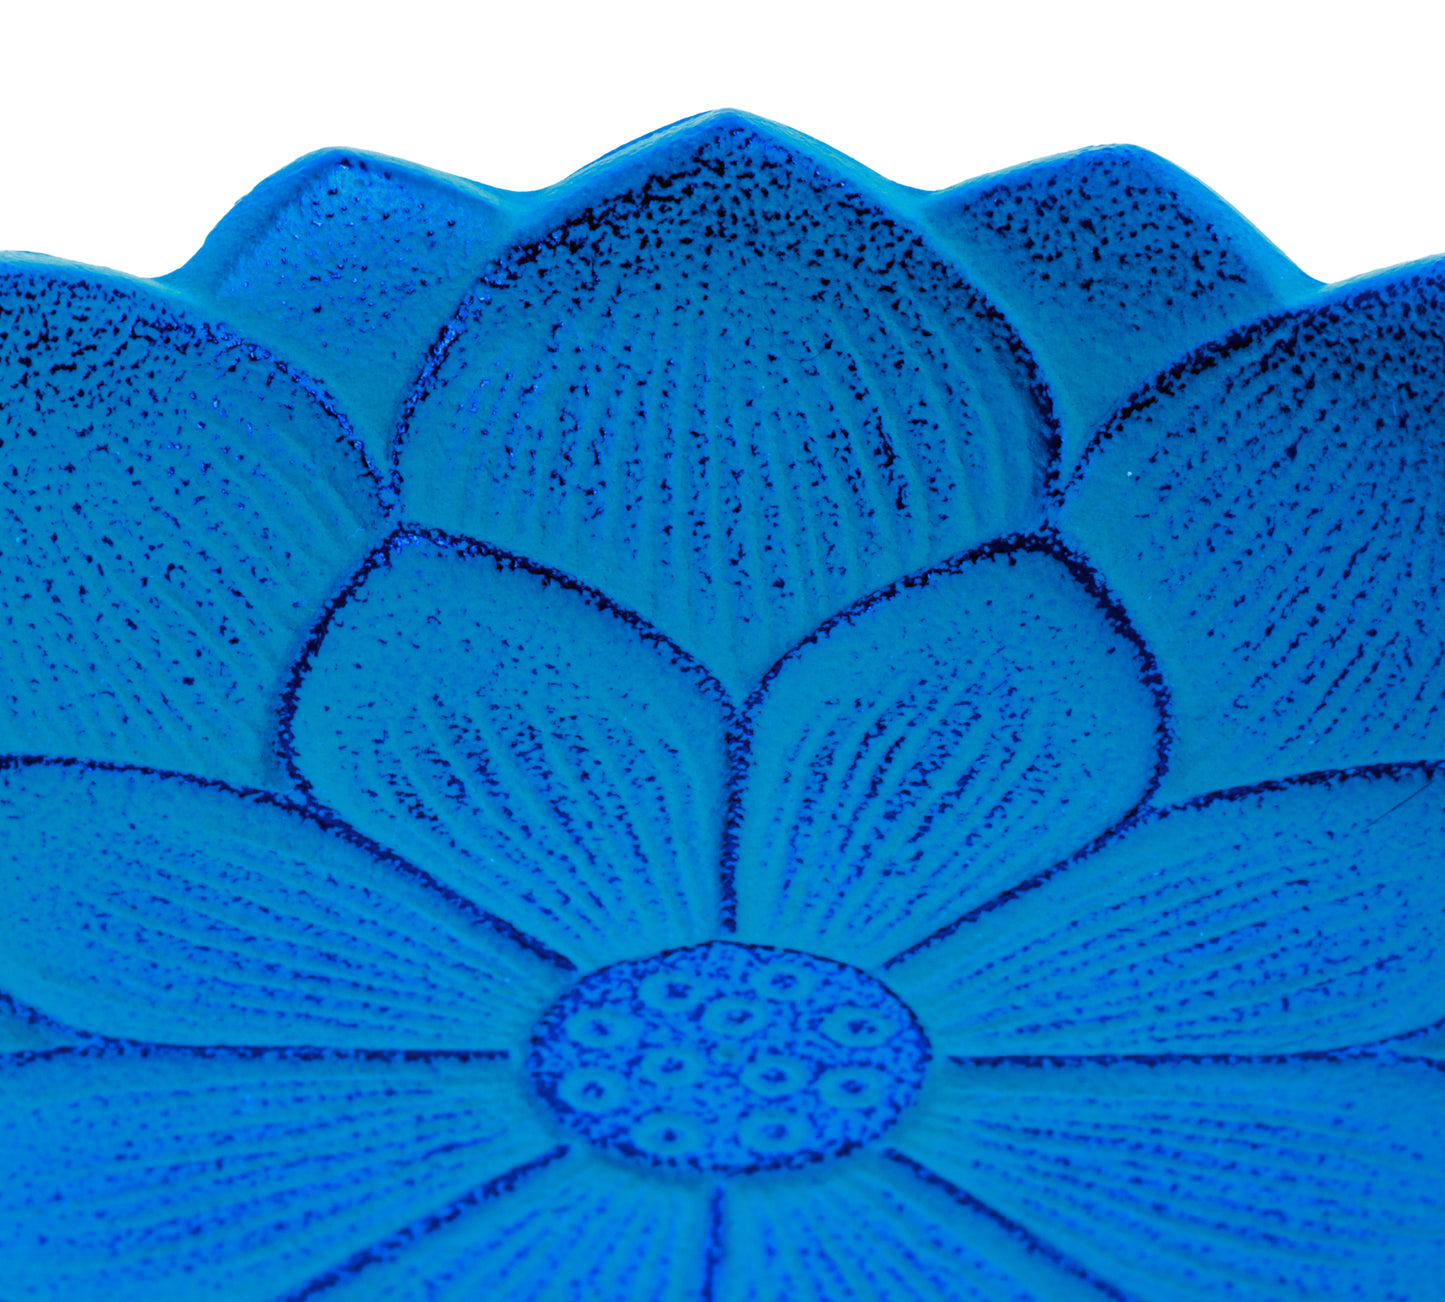 Iwachu Incense Burner - Blue Lotus Flower